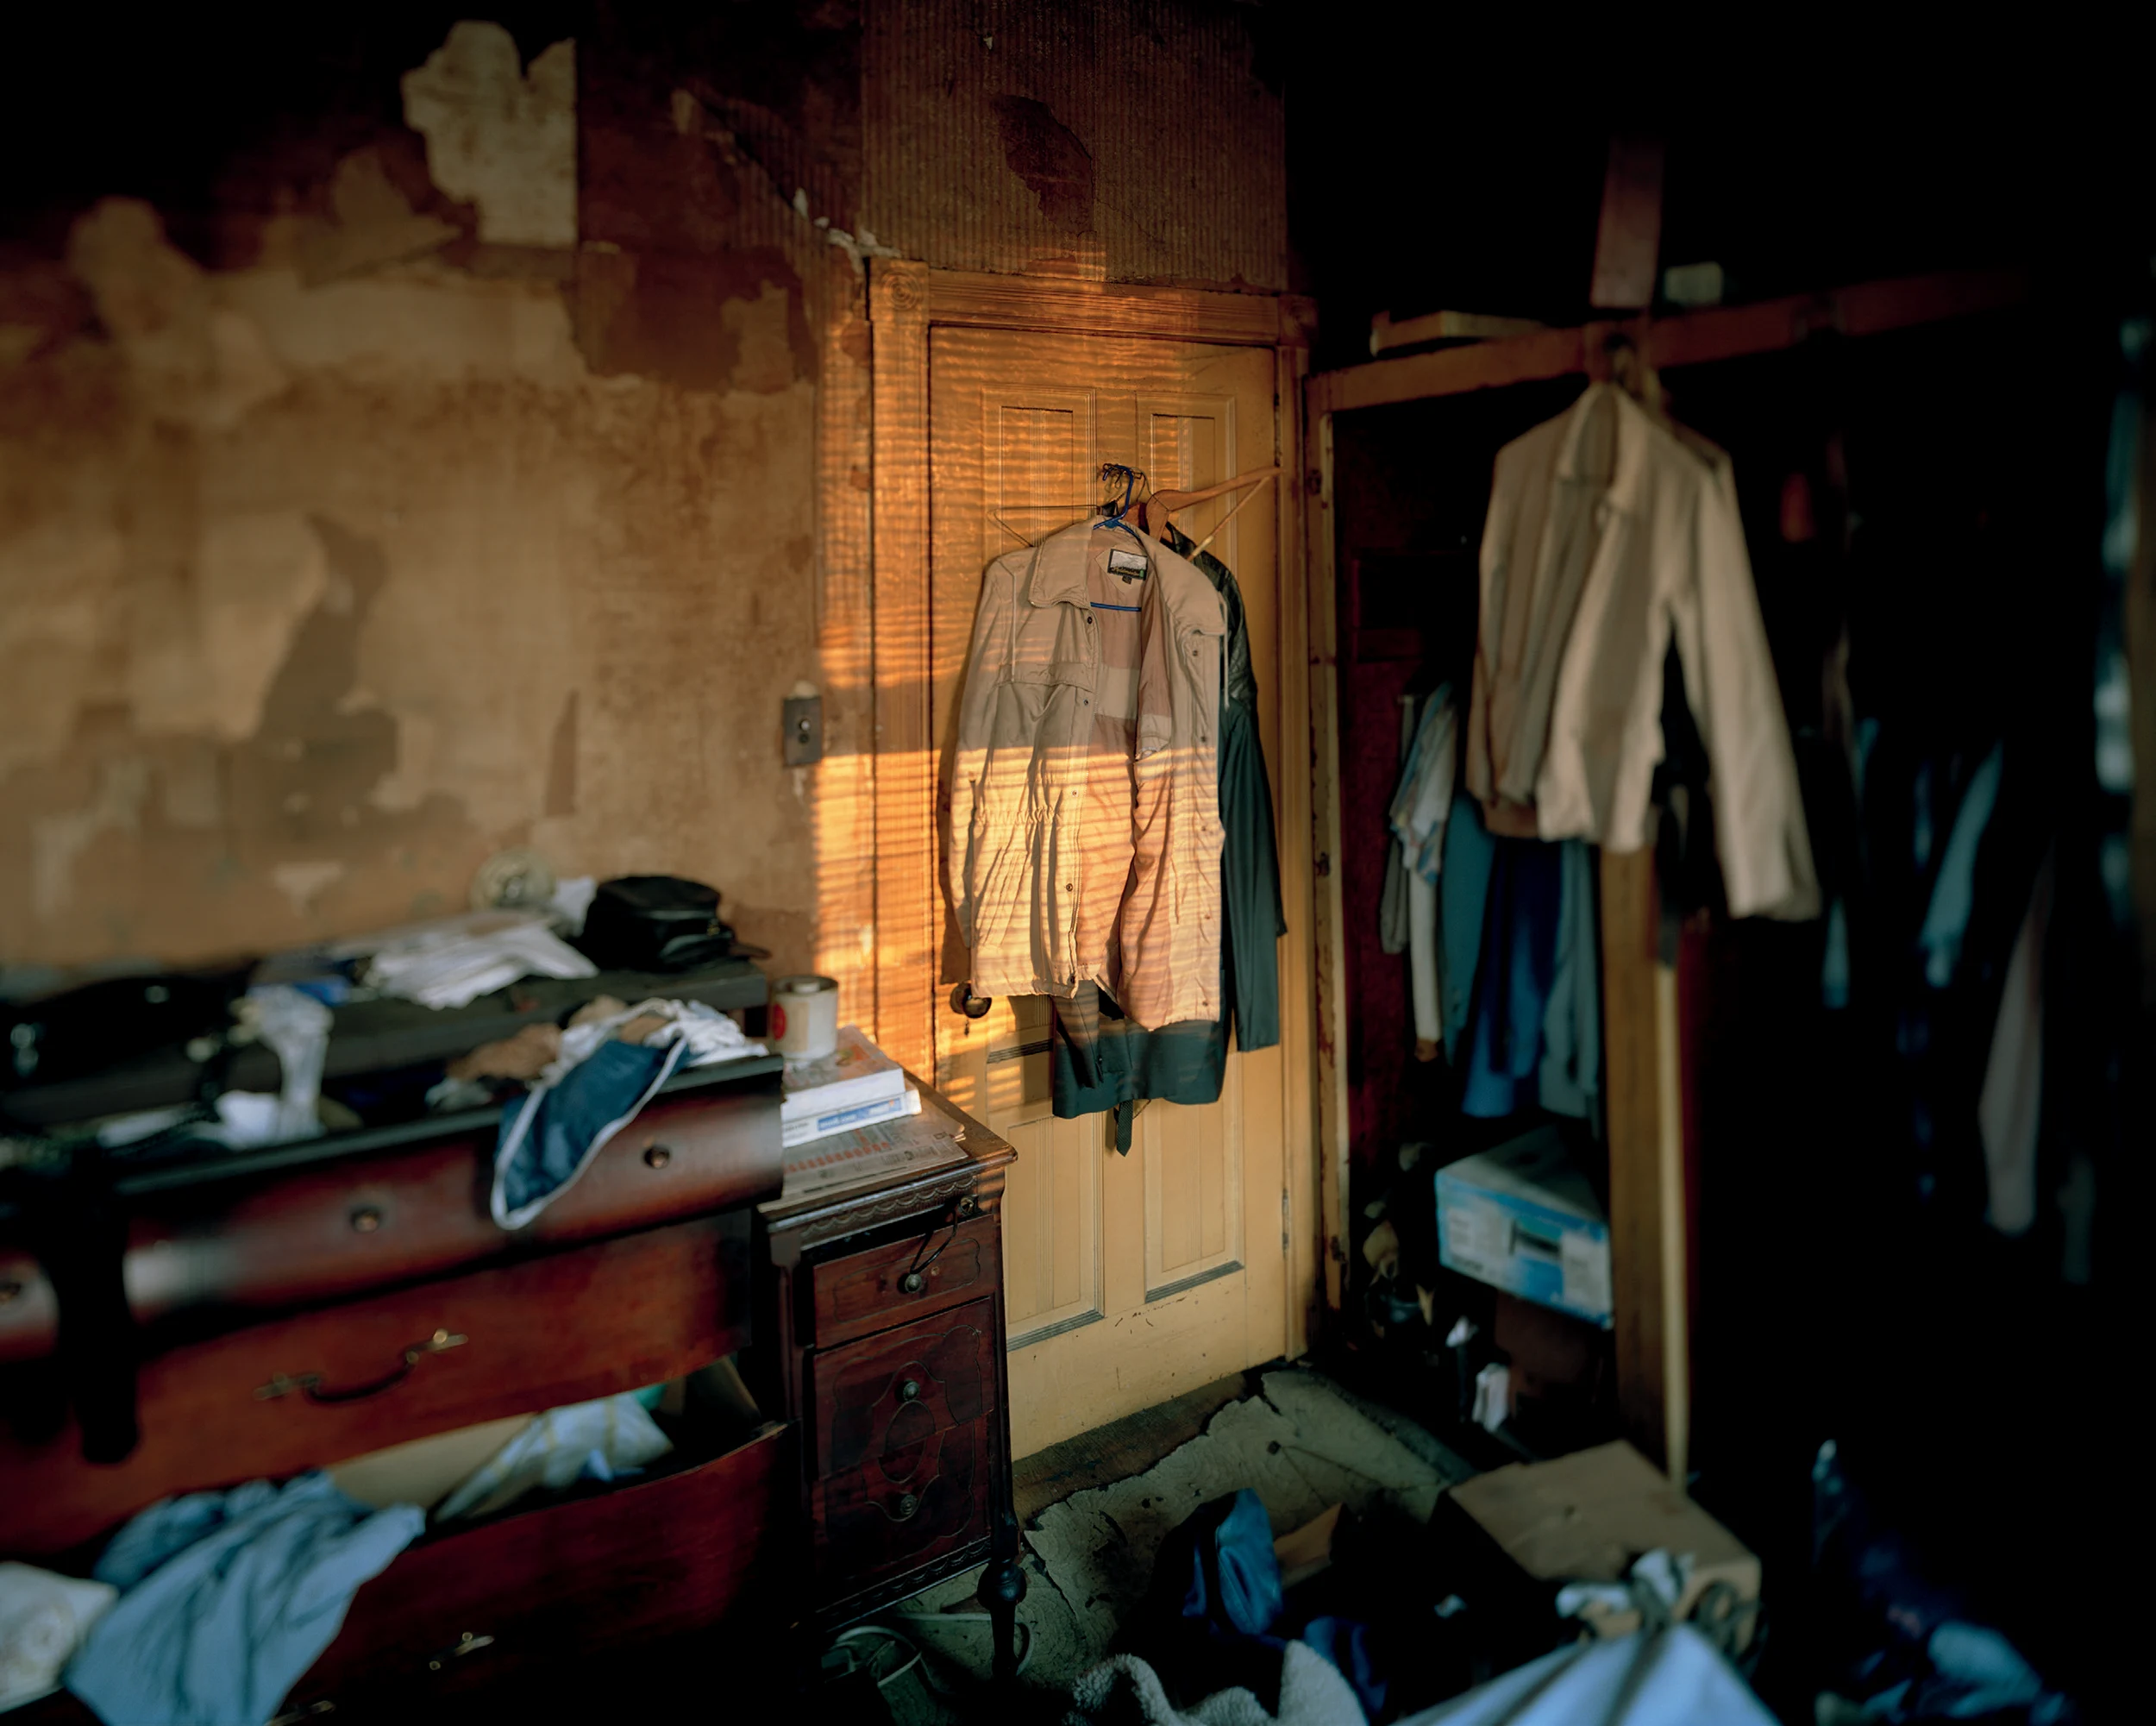 Fotografía de Jeffrey Stockbridge de un interior doméstico en la que se muestra una chaqueta colgada.